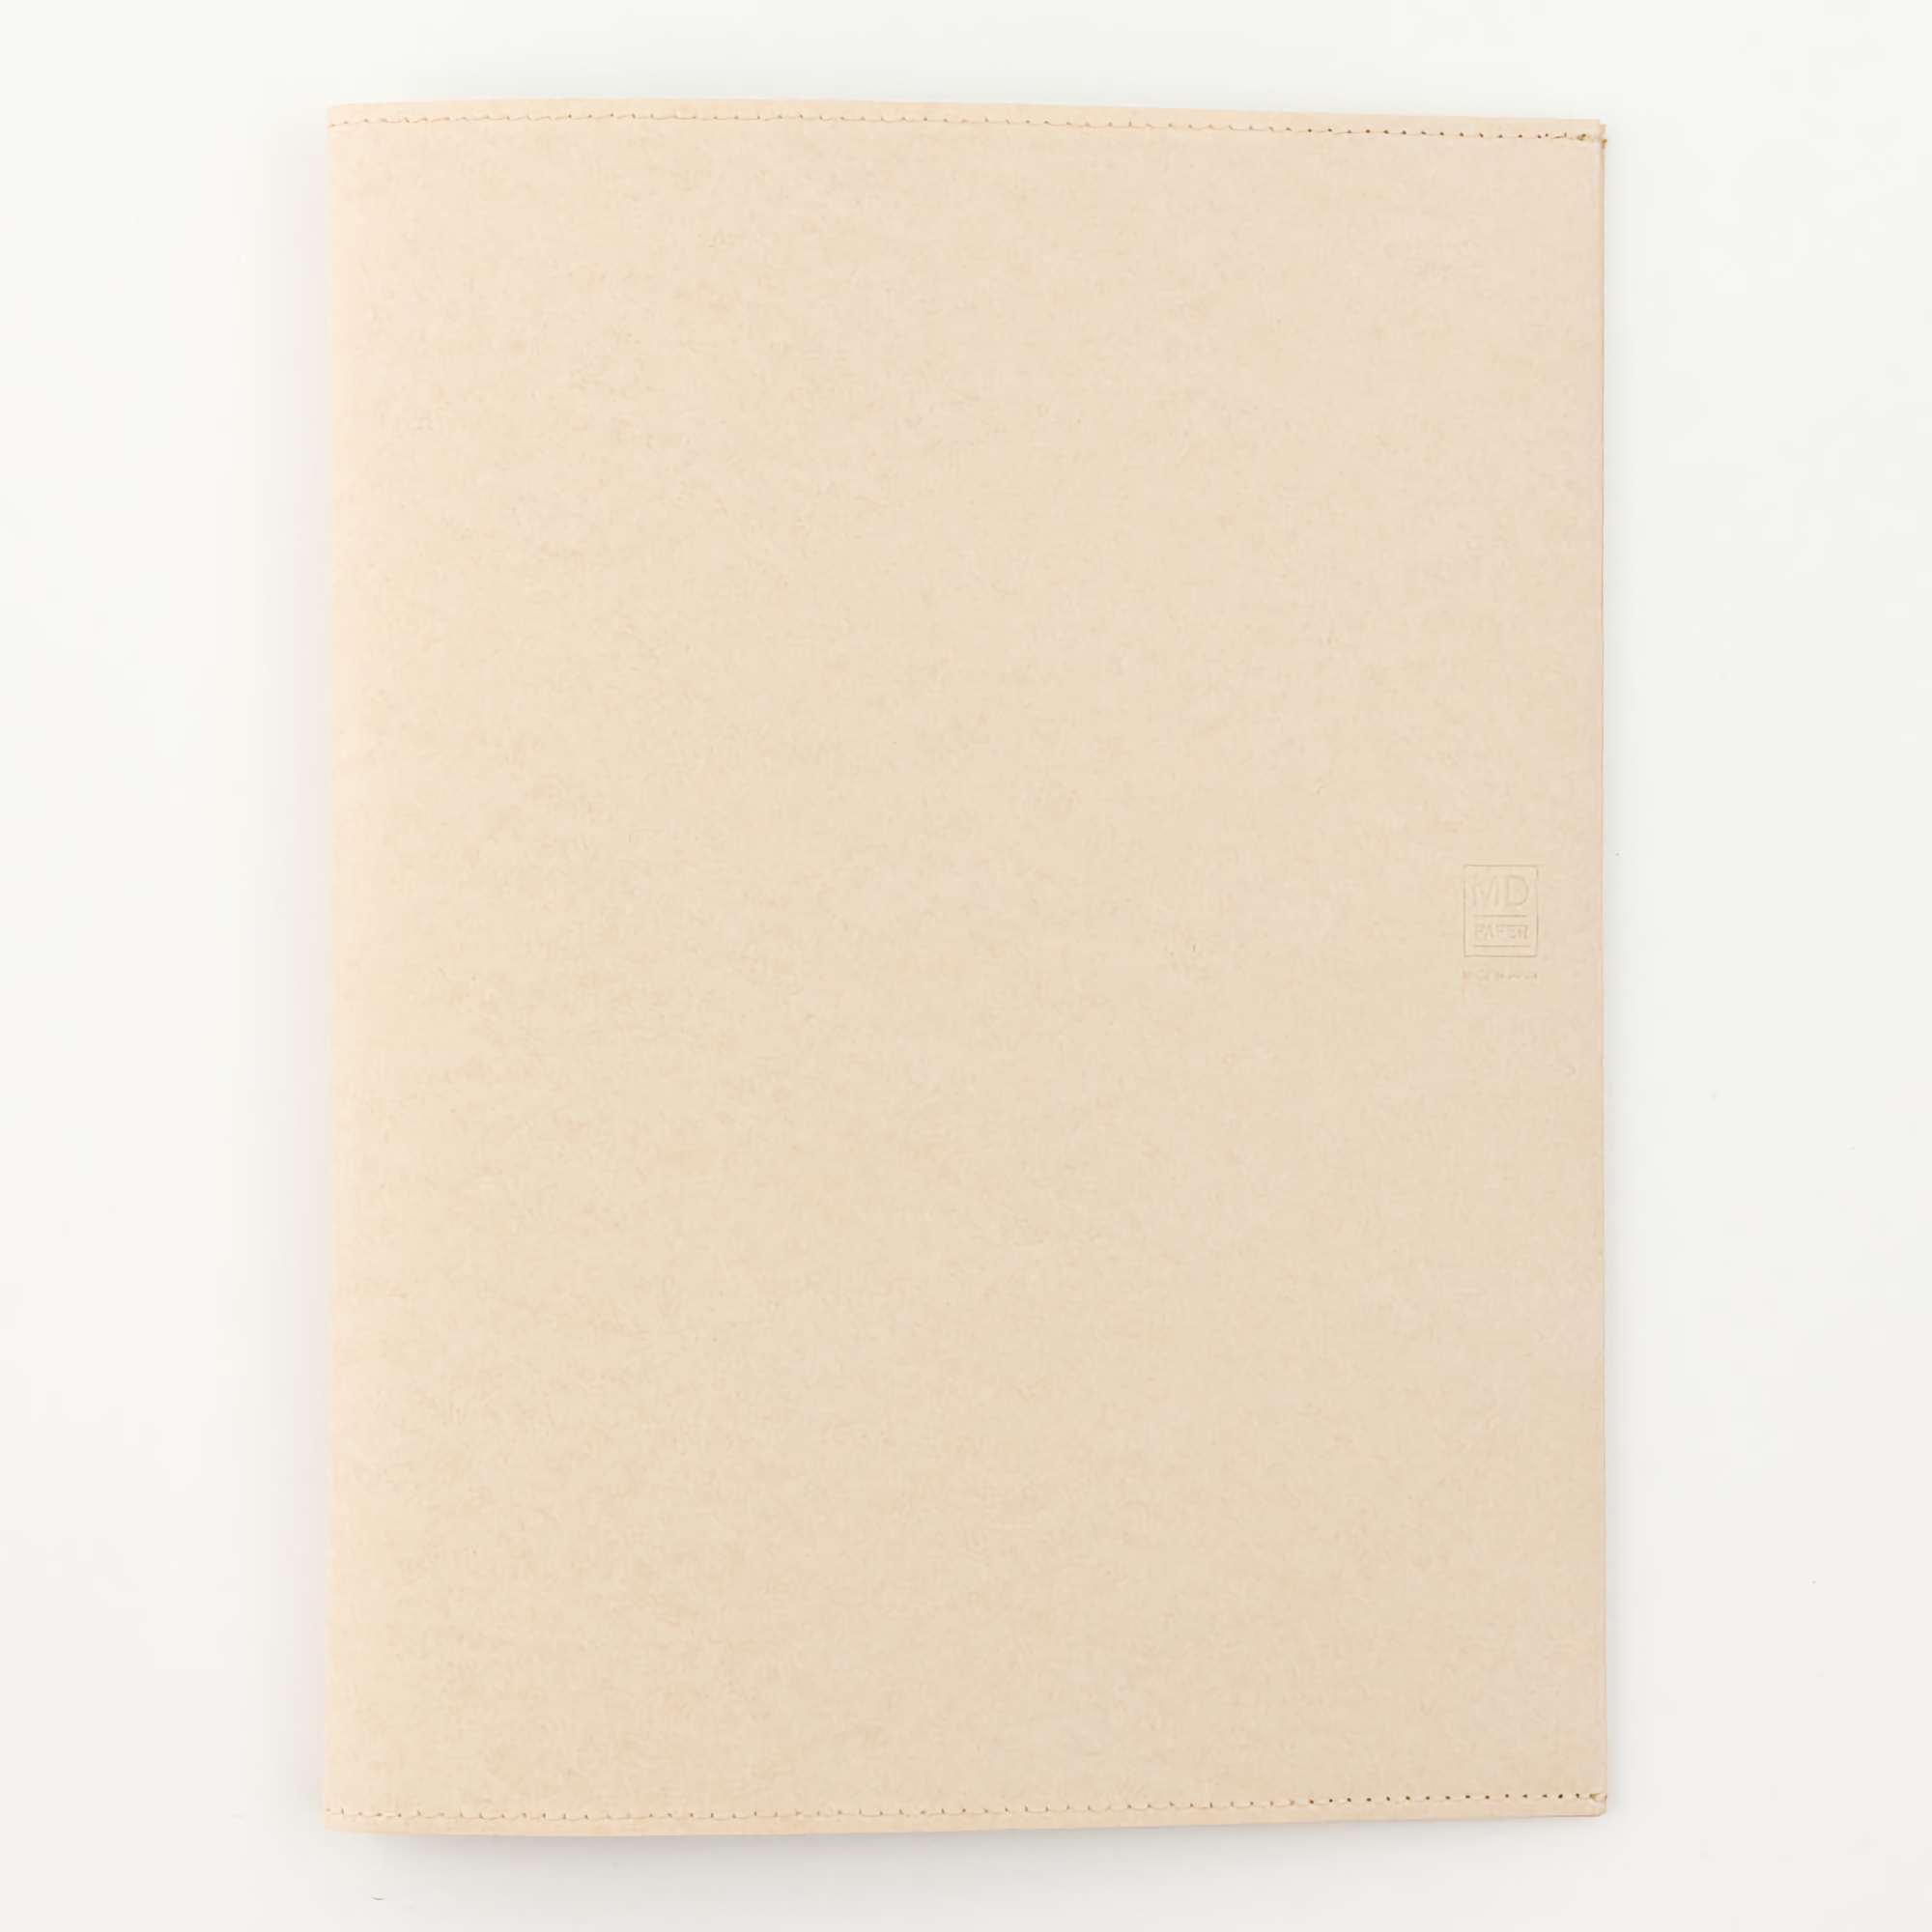 Midori MD Paper Cover [A4]